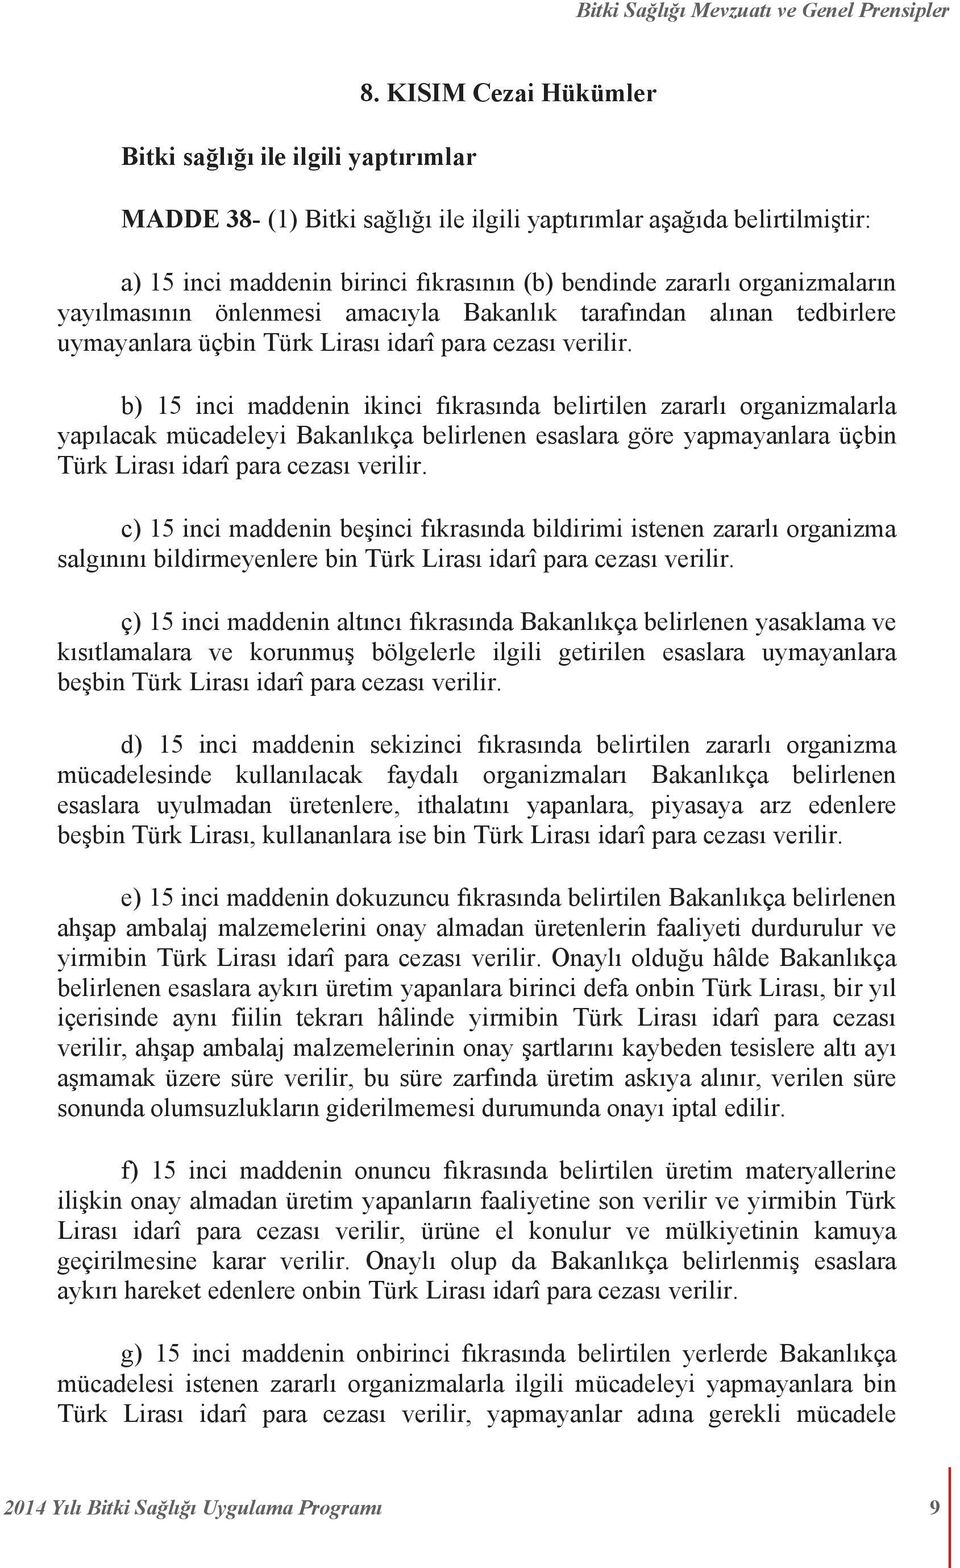 amacıyla Bakanlık tarafından alınan tedbirlere uymayanlara üçbin Türk Lirası idarî para cezası verilir.